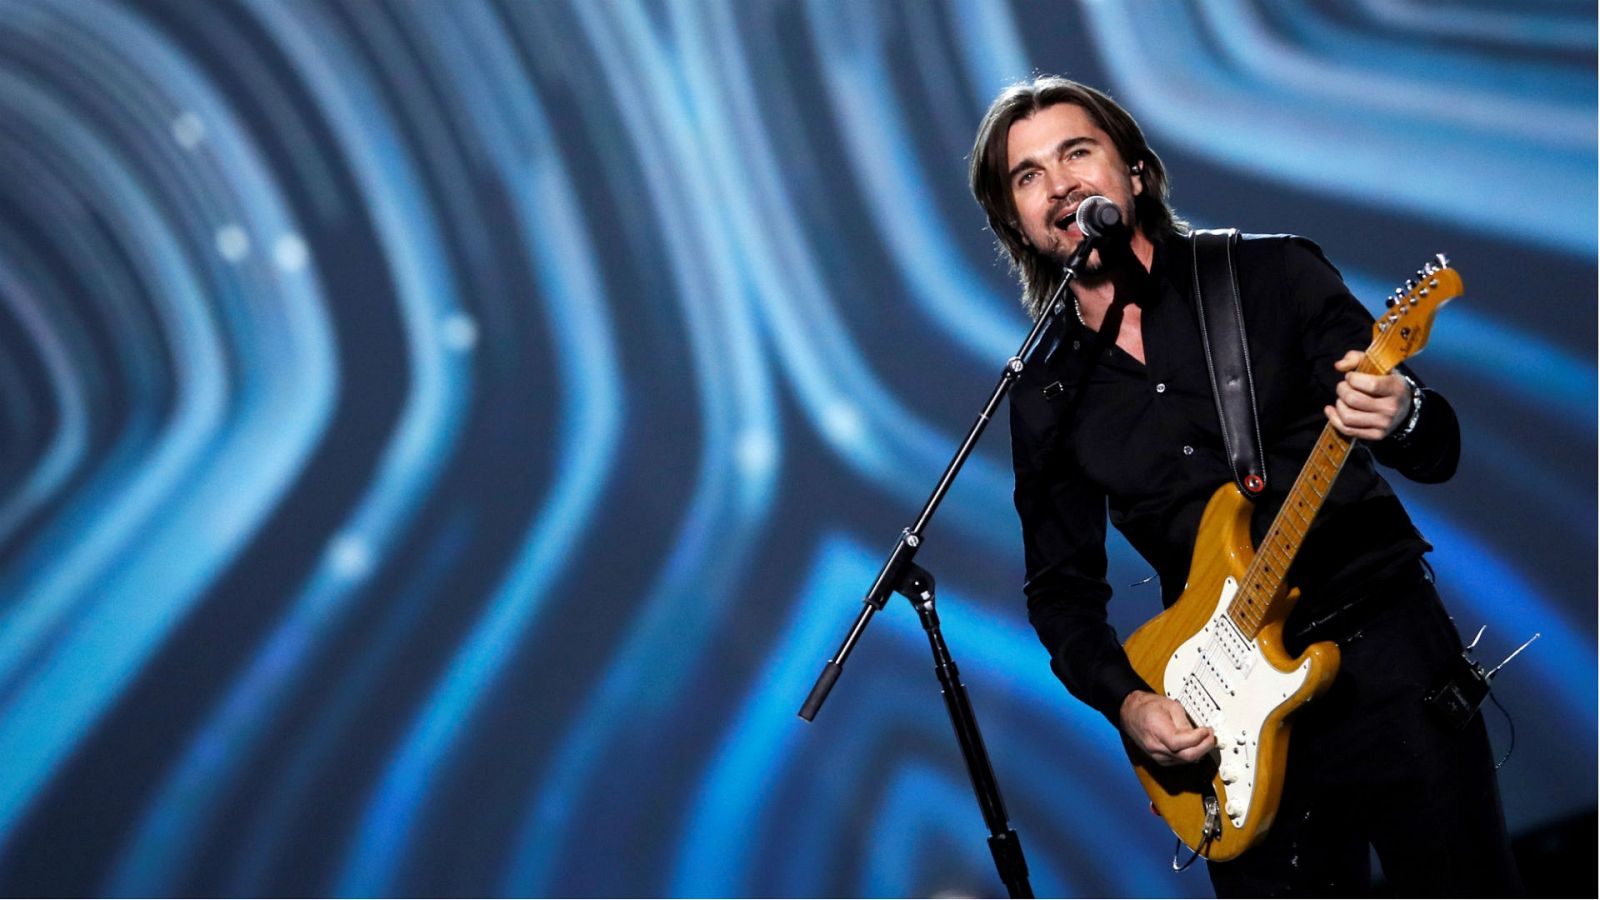 Corazón - Juanes, persona del año 2019 según los premios Latin Grammy 2019